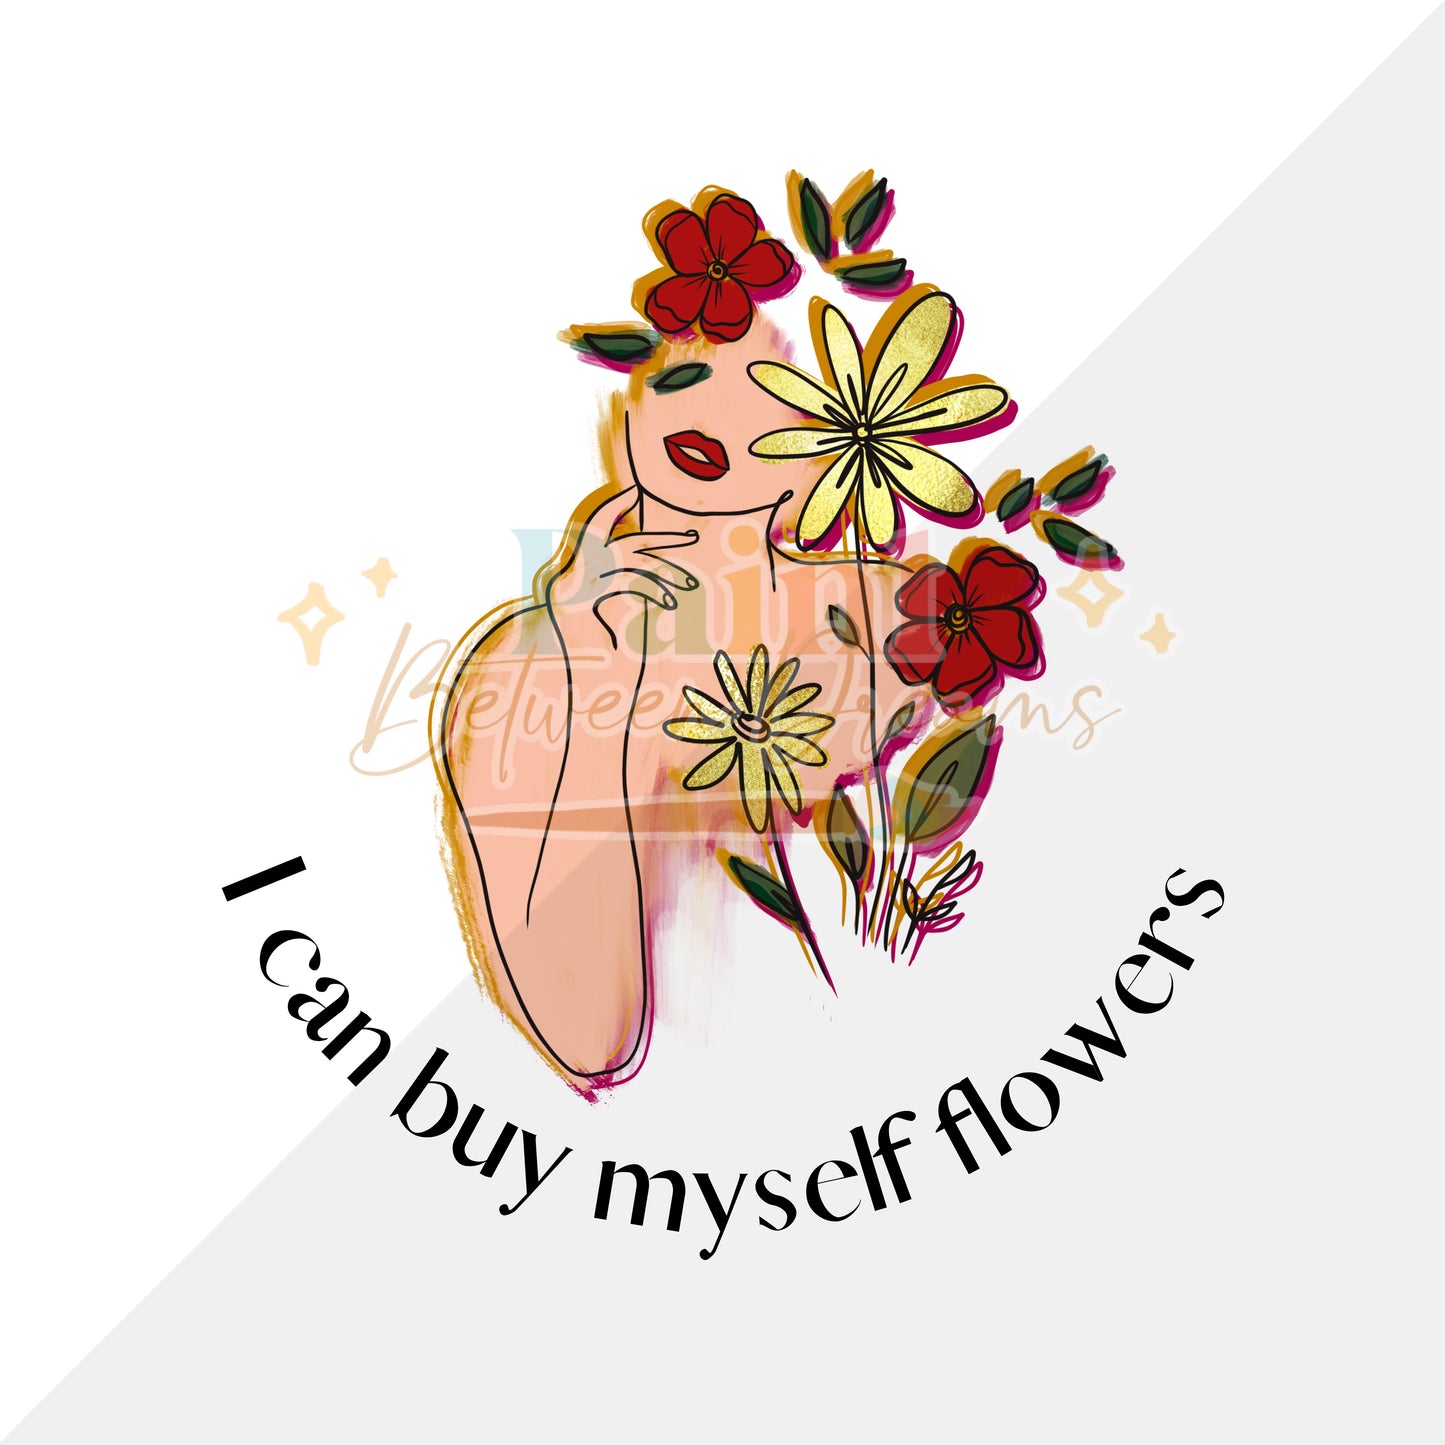 Buy Myself Flowers - 4 Skin Tones